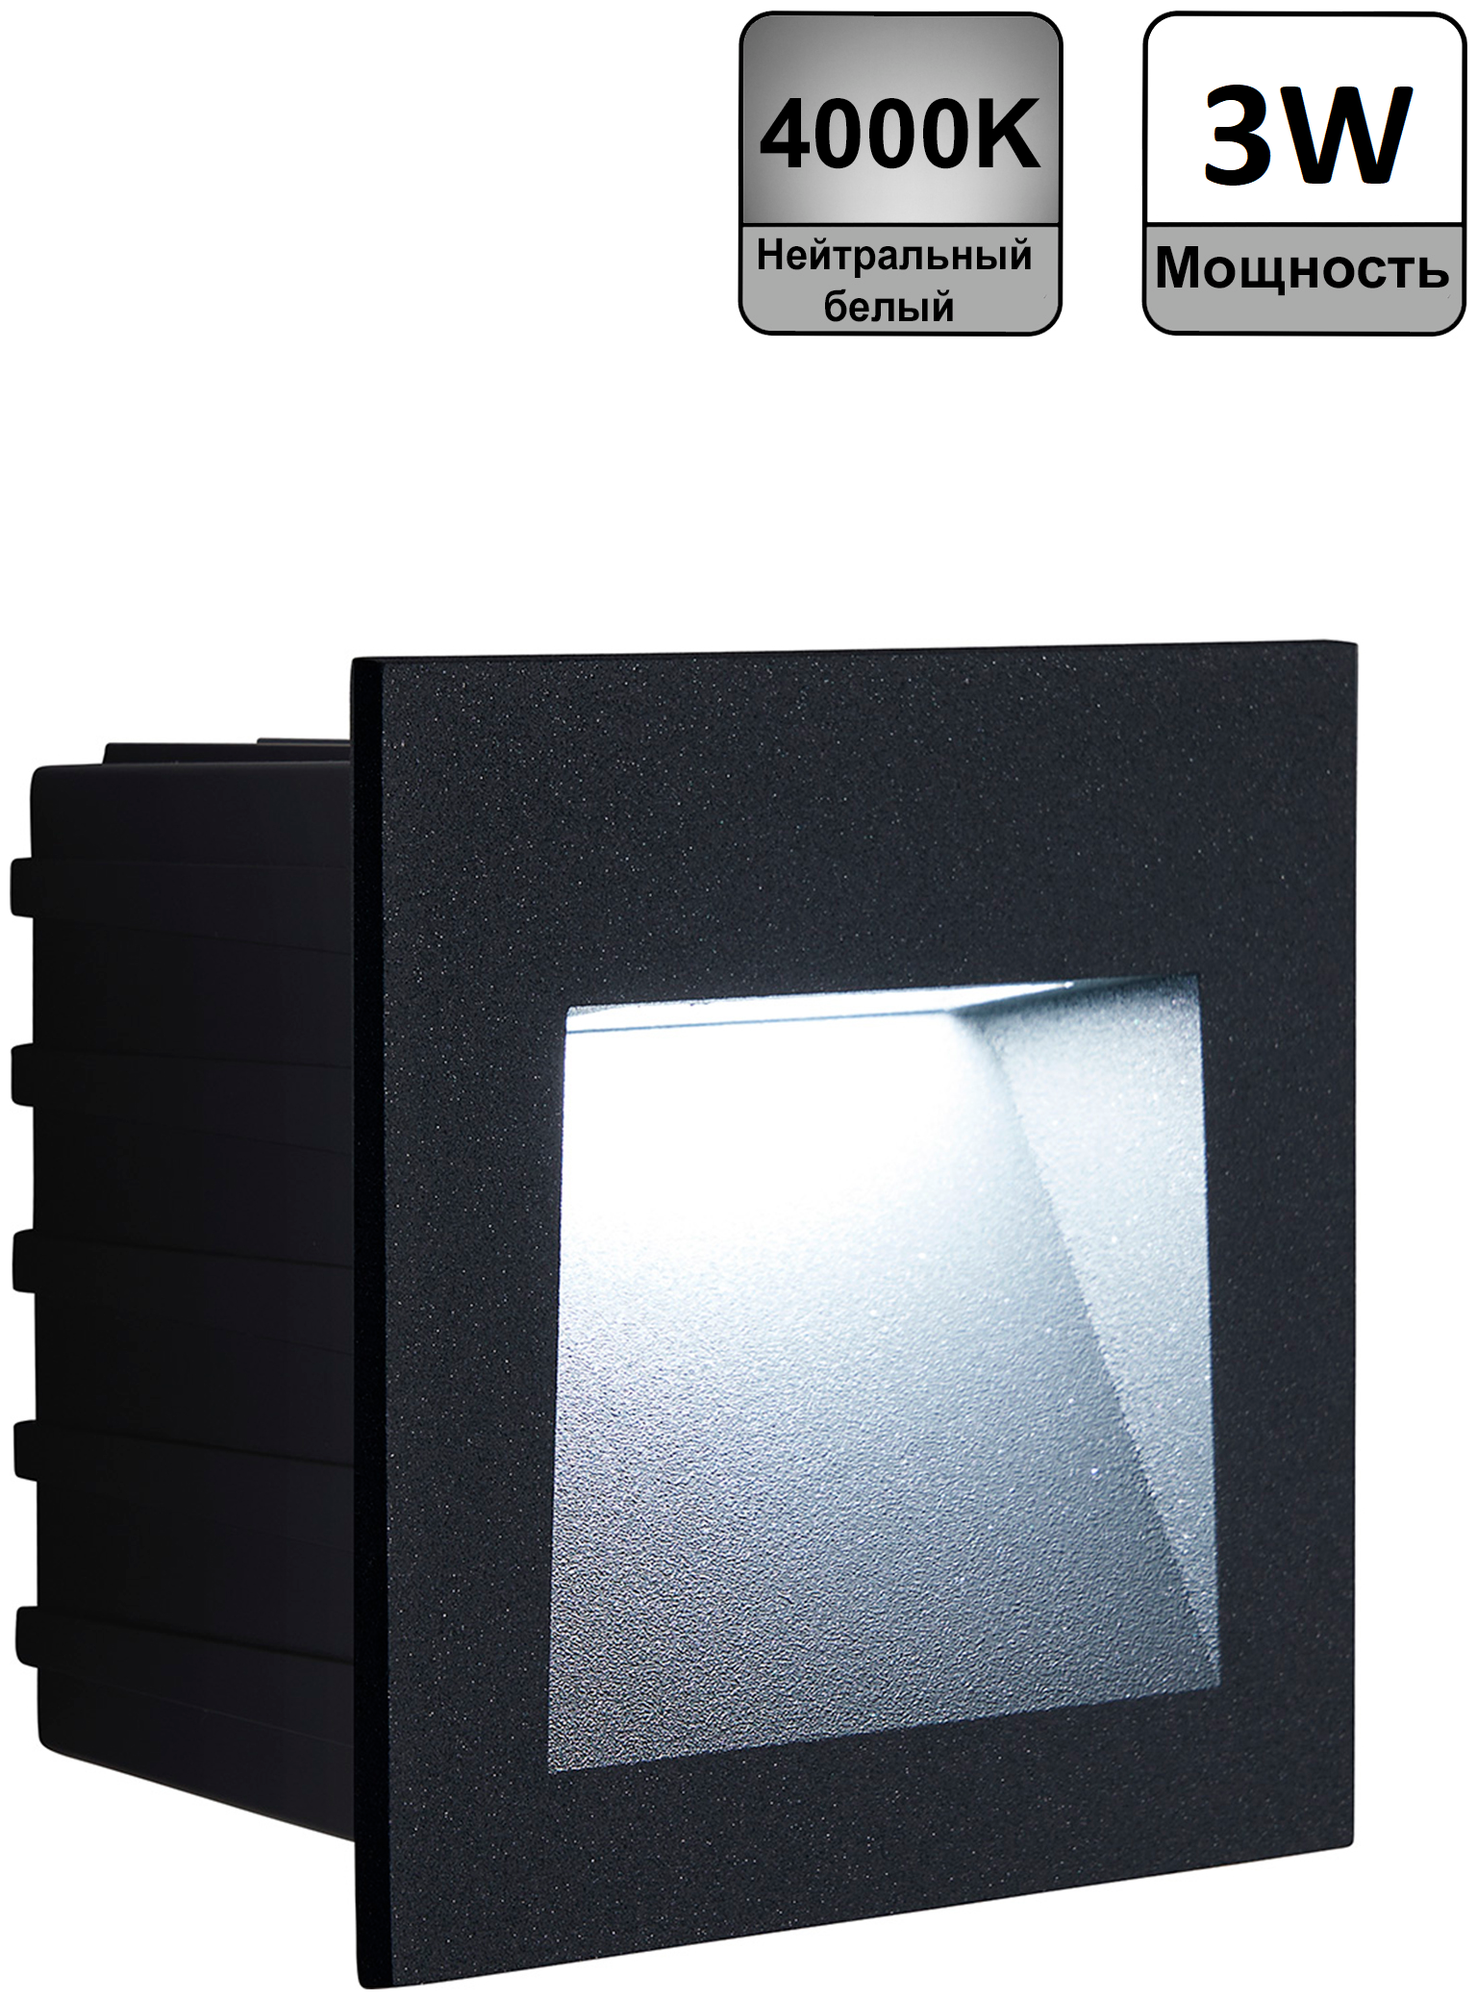 Светодиодный светильник Feron LN013 встраиваемый 3W 4000K, IP65, серый, 41175